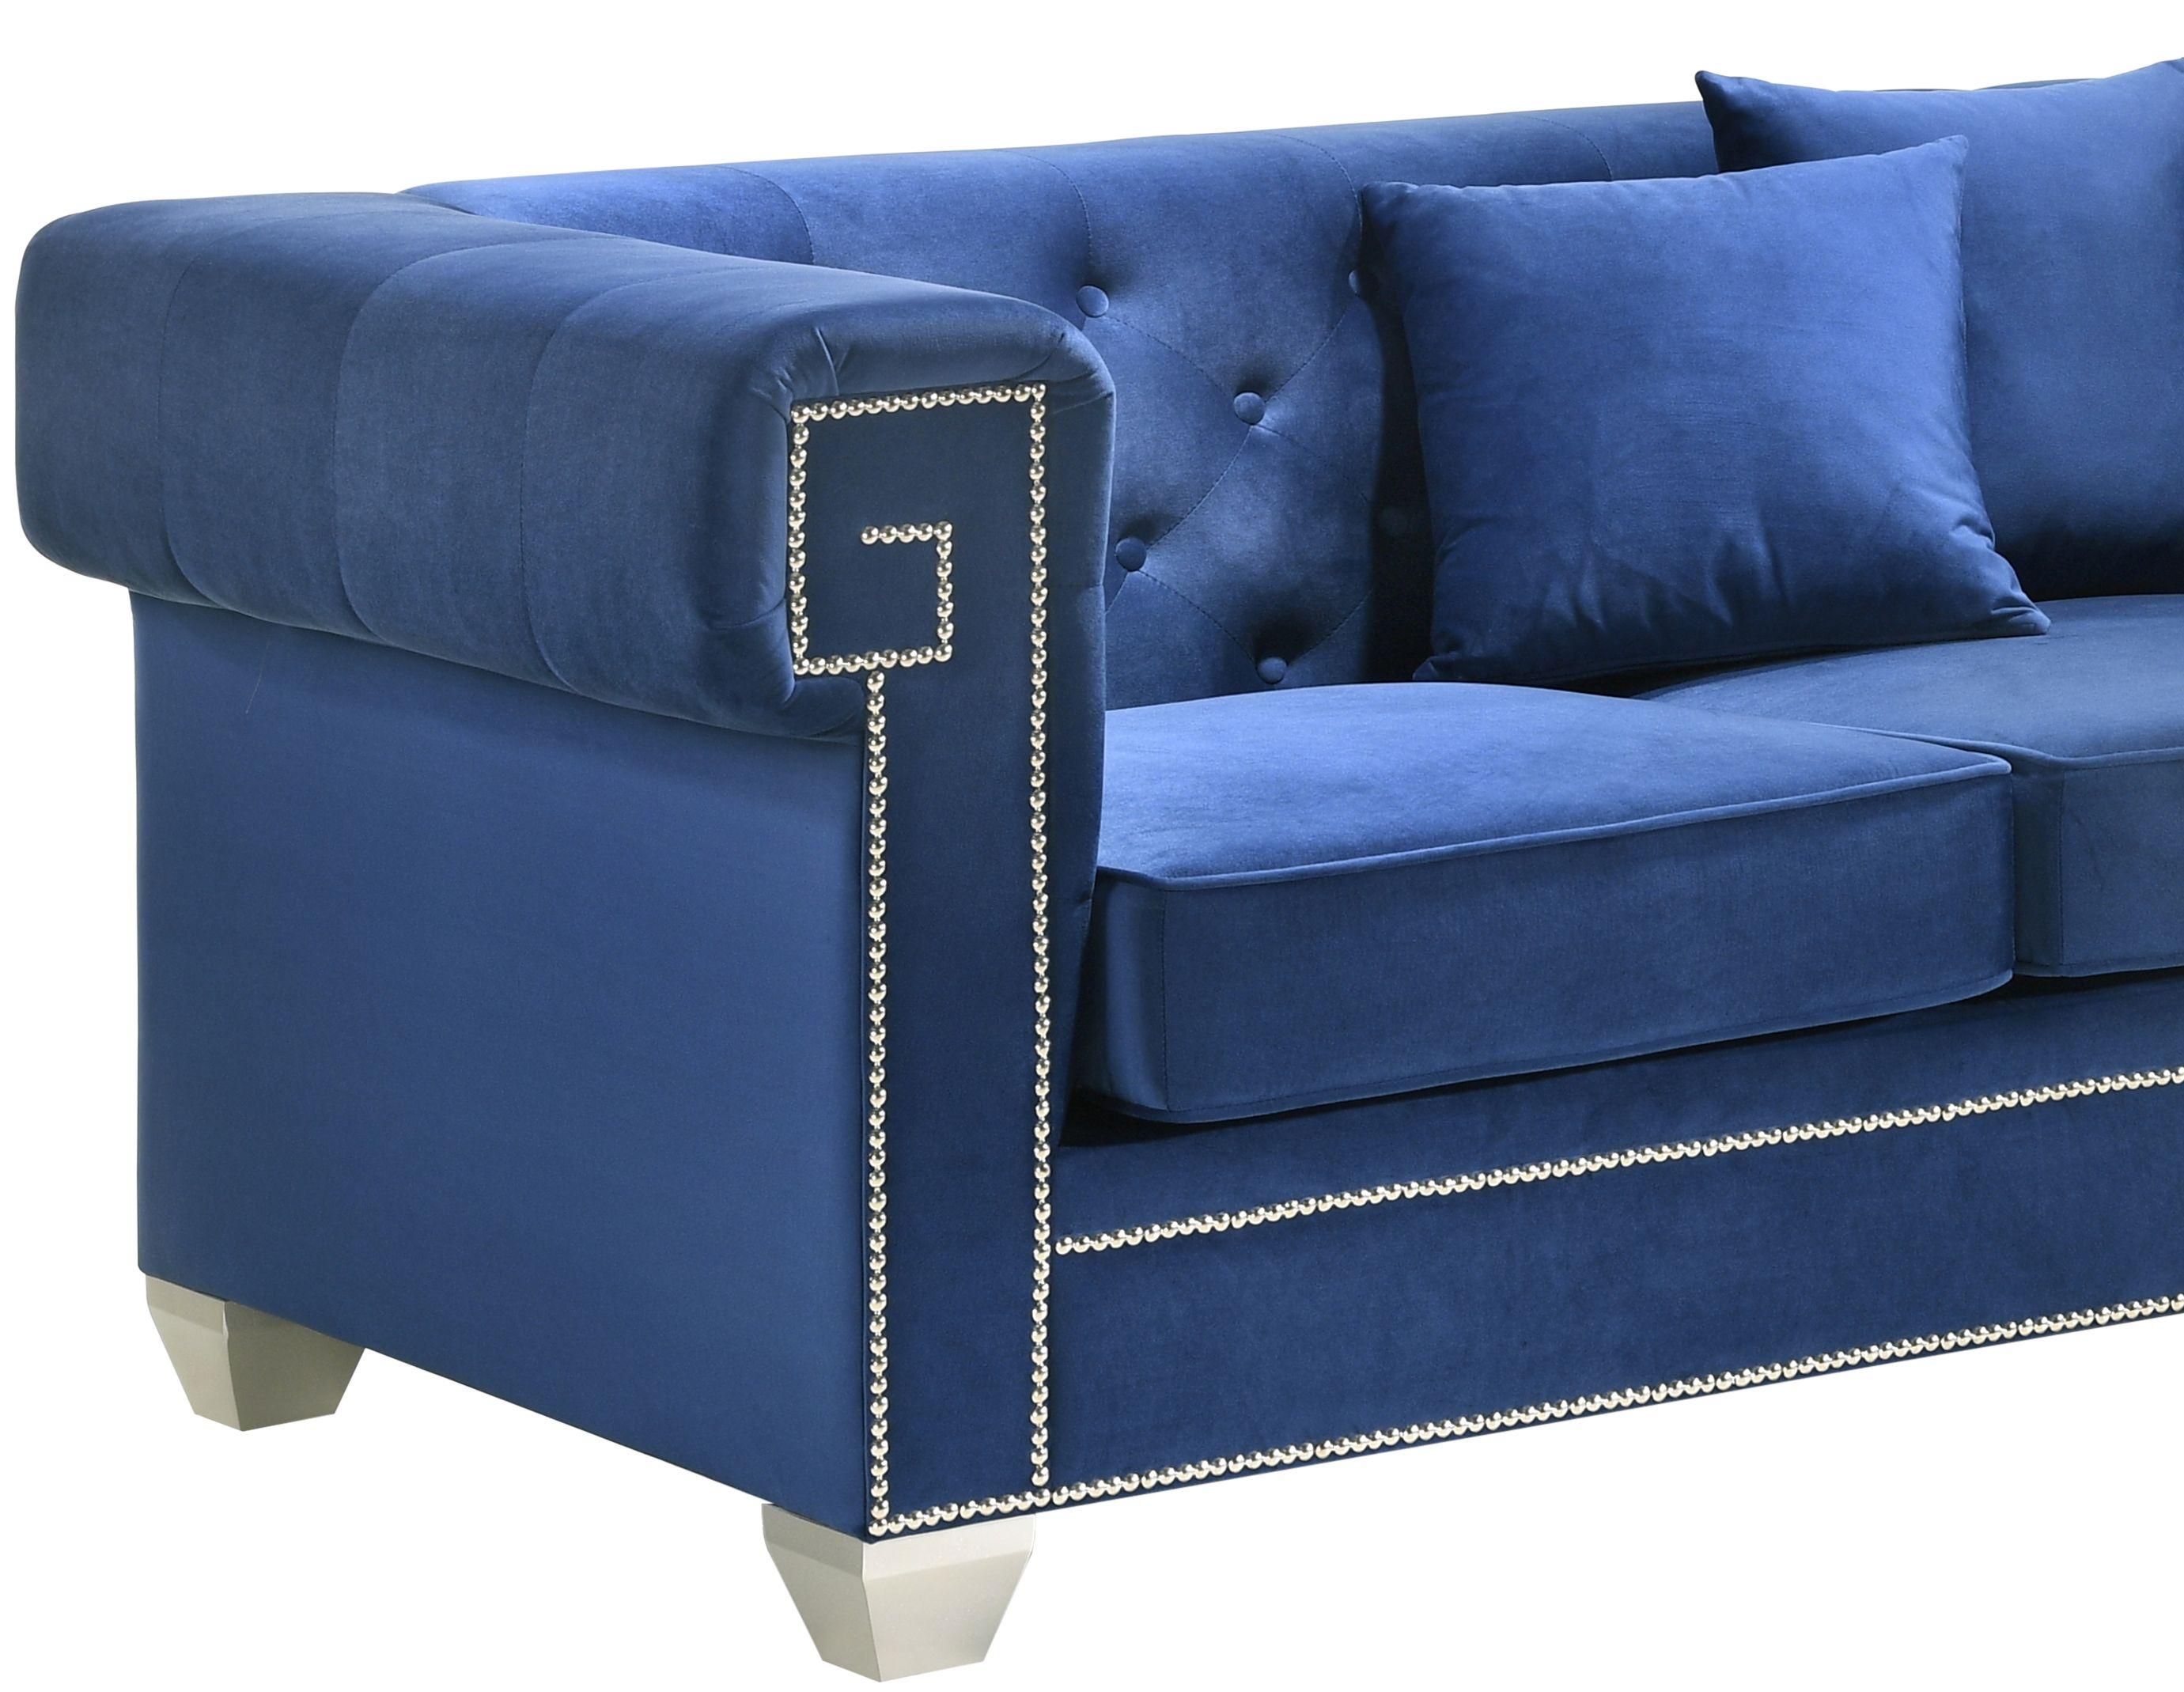 

    
Cosmos Furniture Clover Blue Sofa Blue Clover Blue-Sofa
